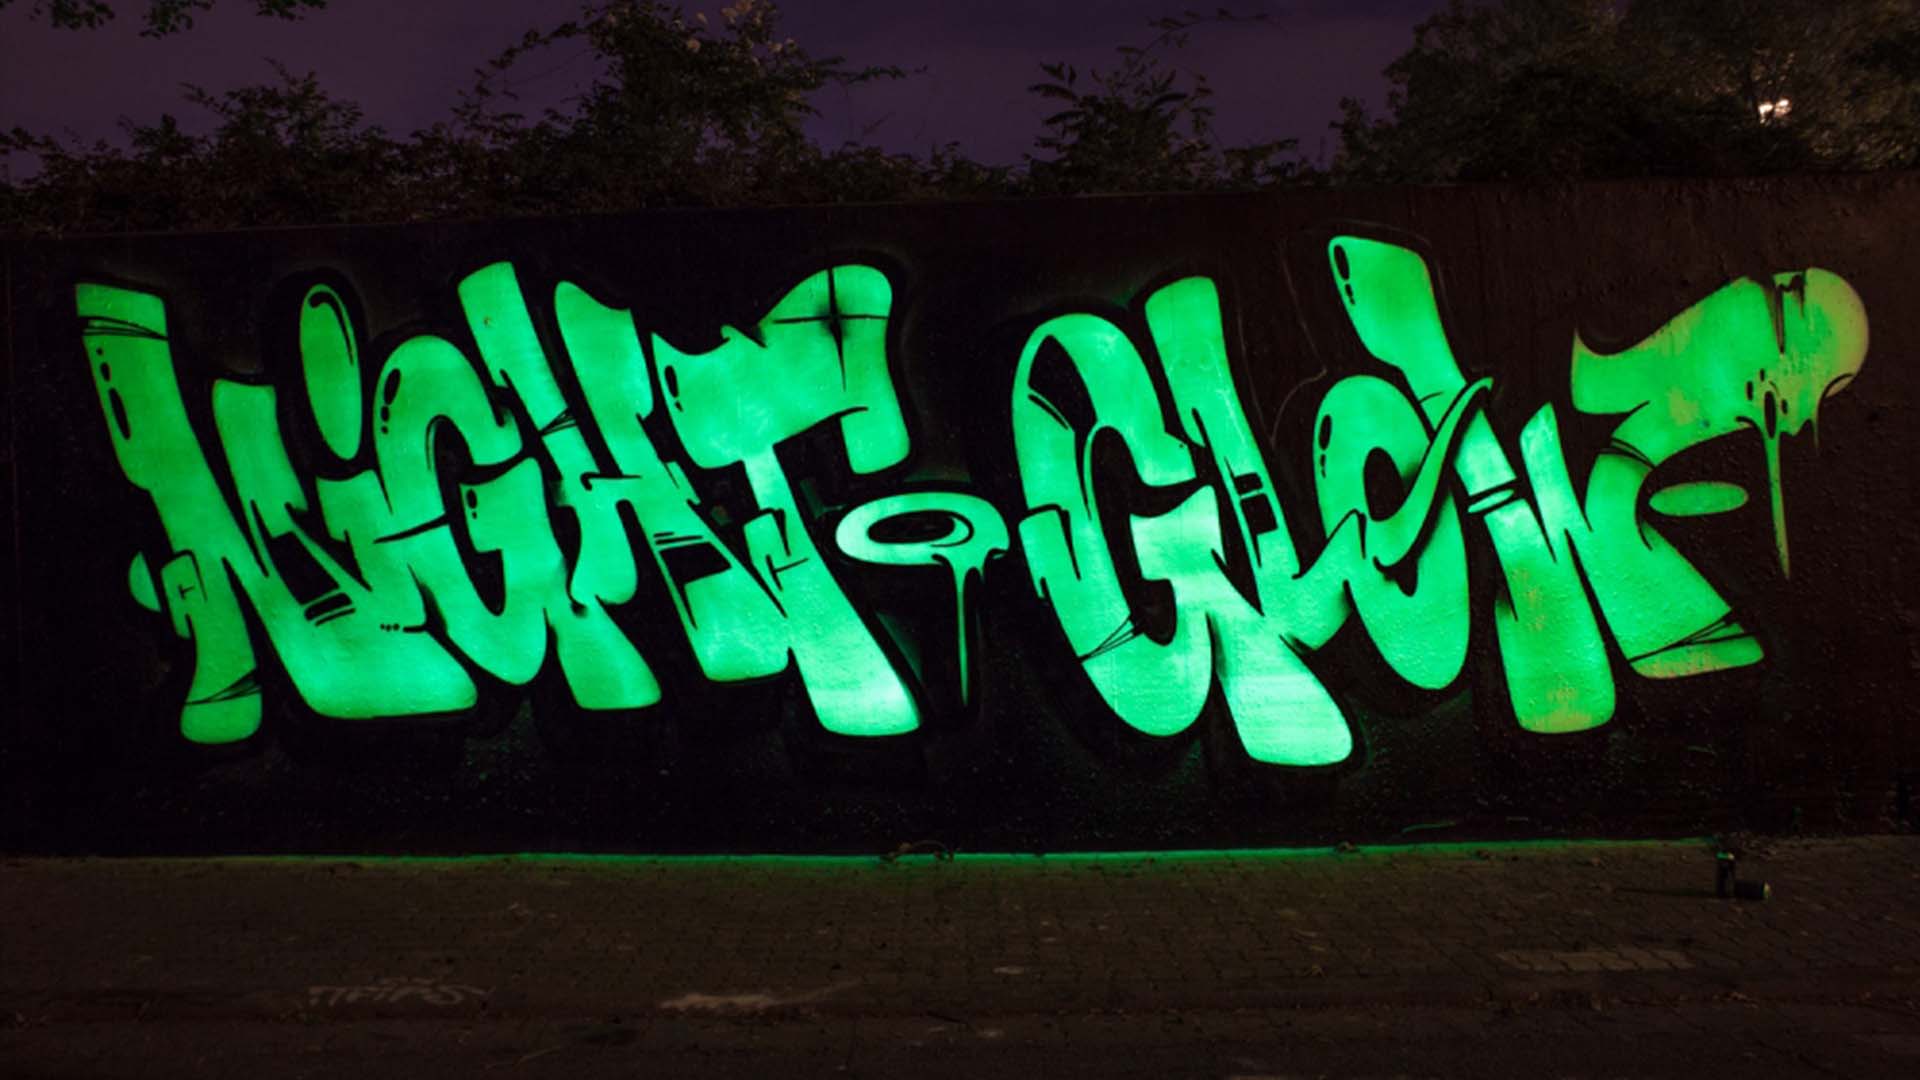 Luminous wall paint